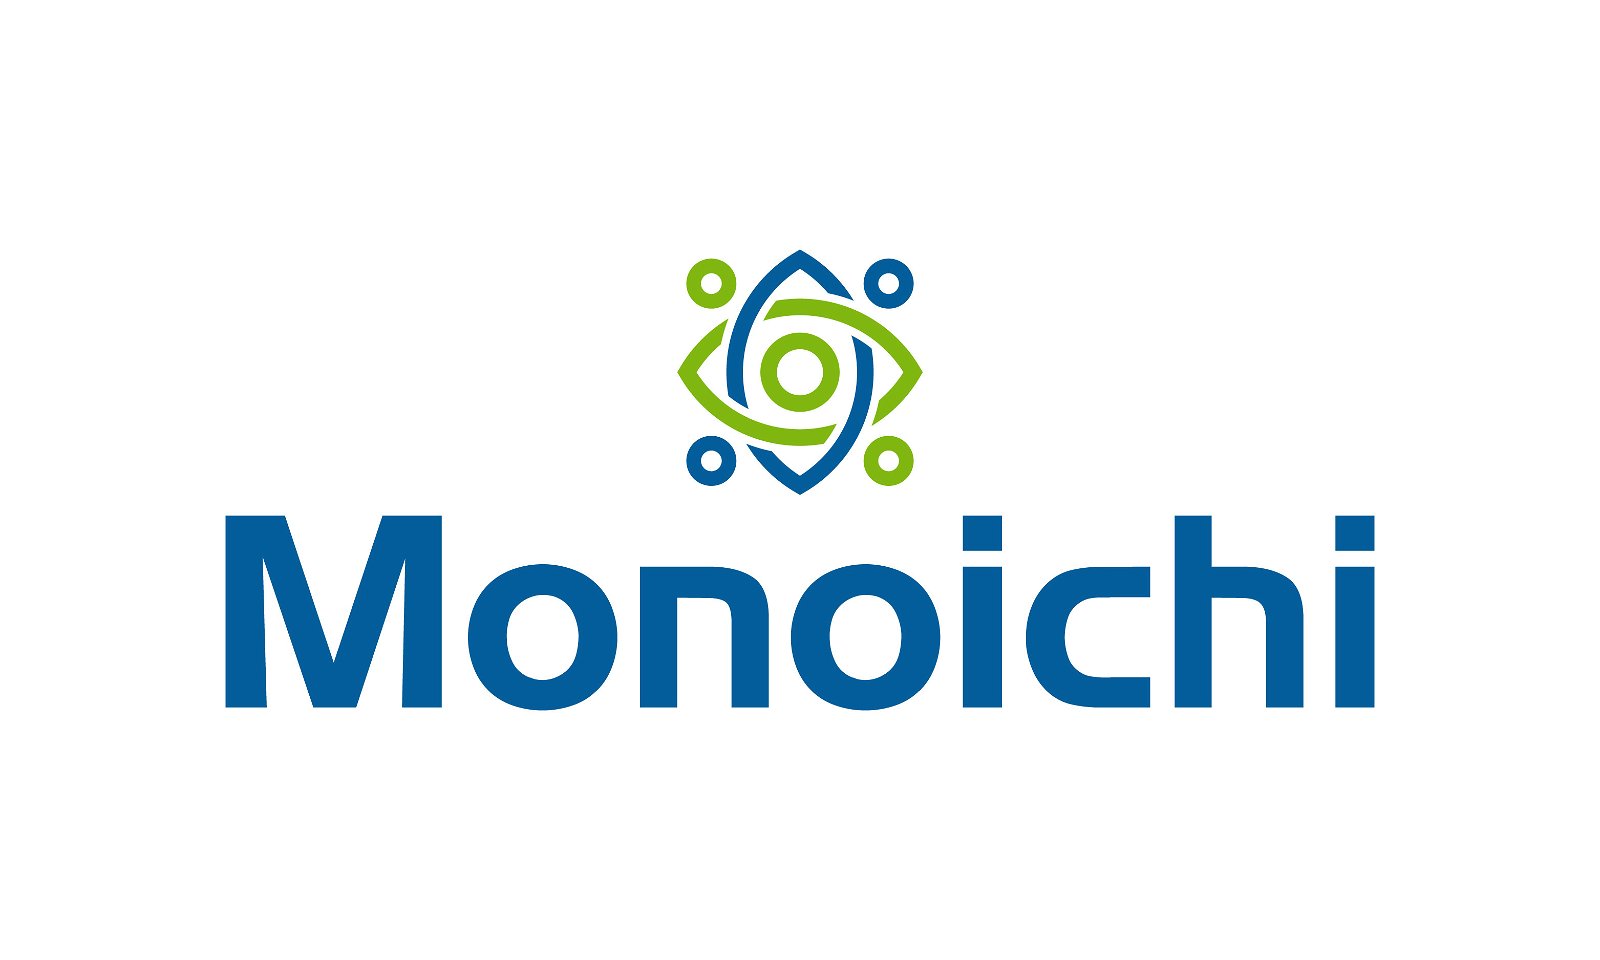 Monoichi.com - Creative brandable domain for sale